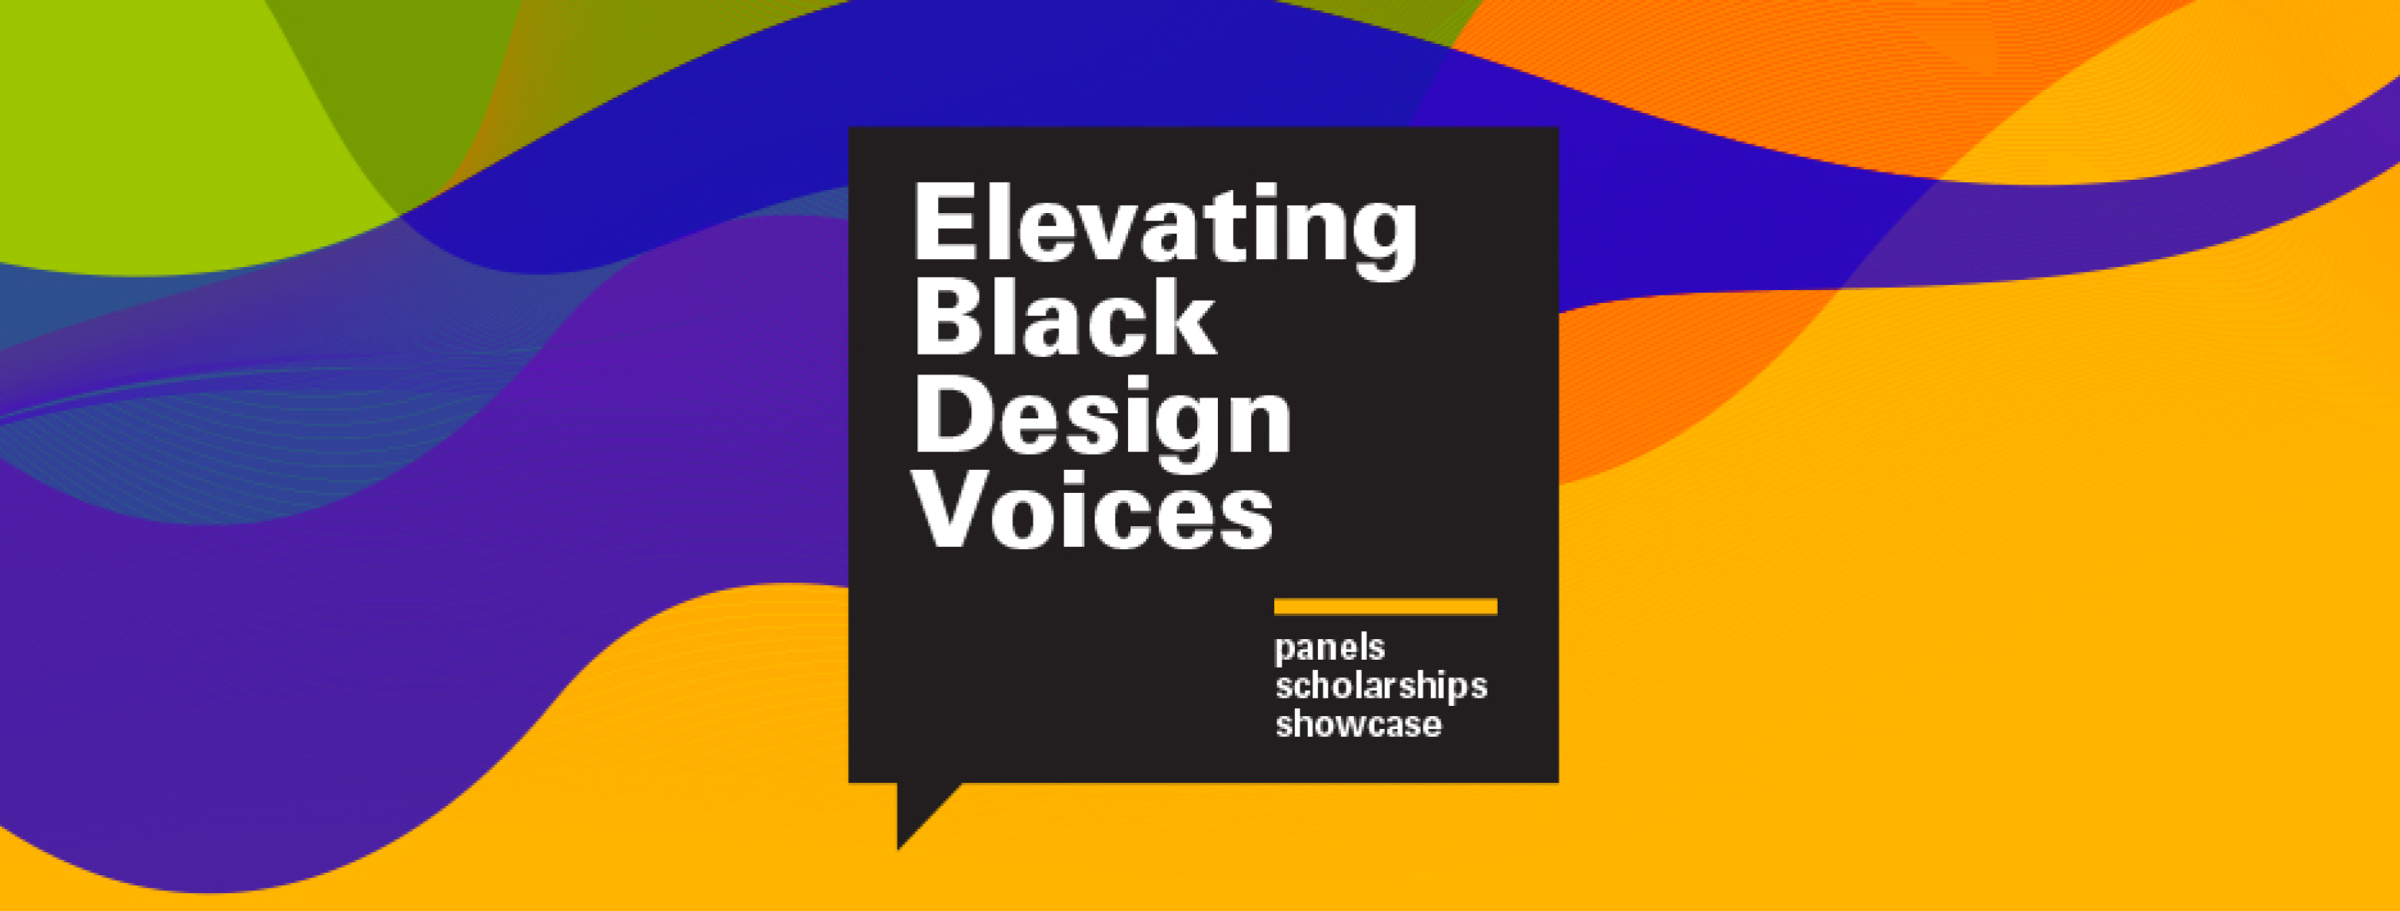 Elevating Black Design Voices Graphic